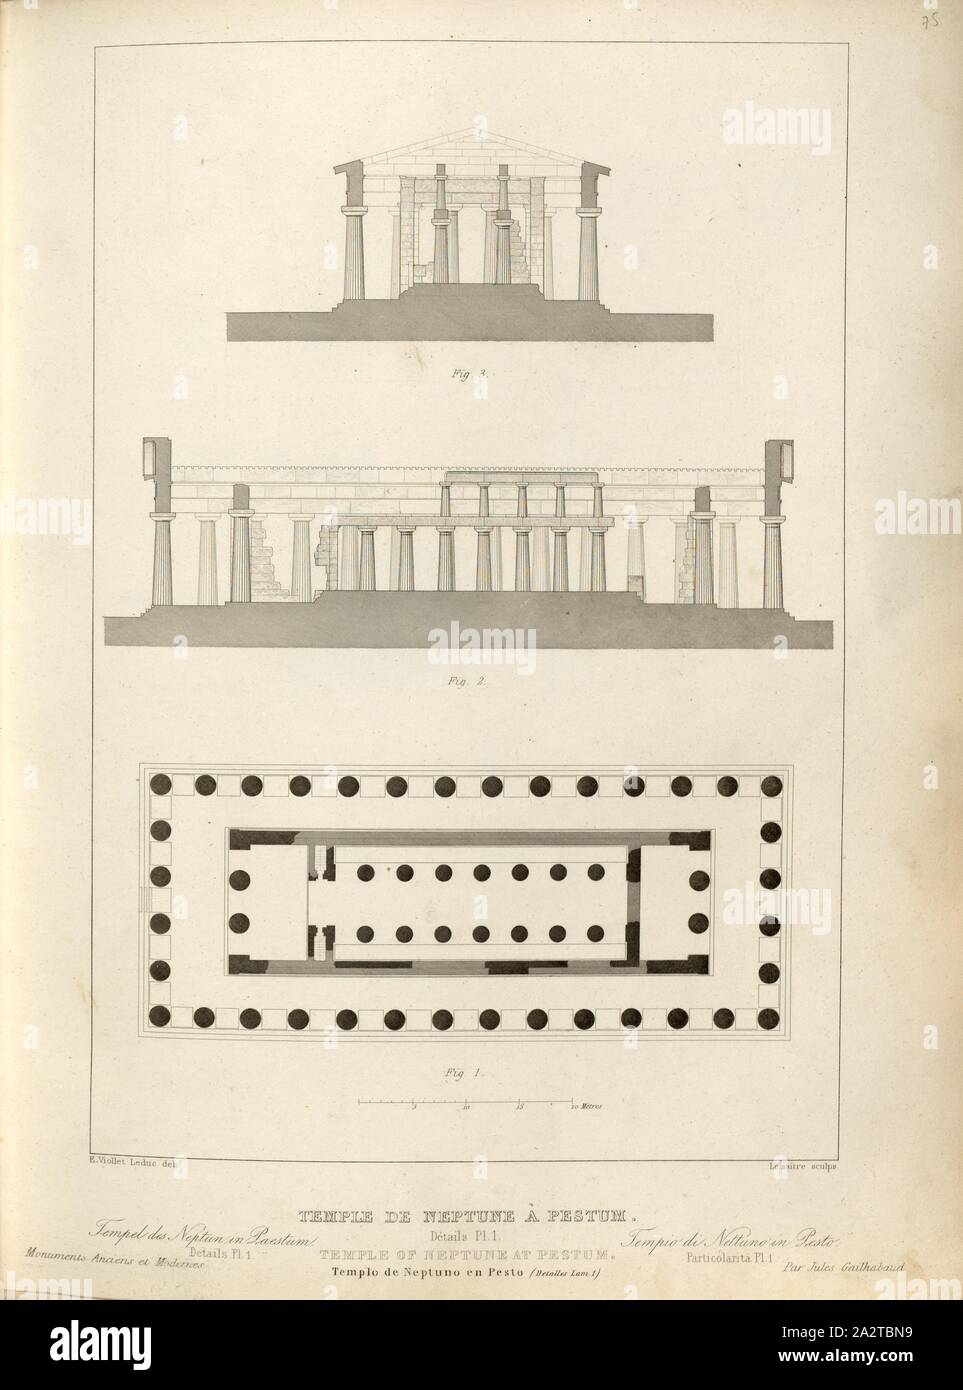 Tempio di Nettuno a Paestum, vista in sezione e pianta del tempio di Nettuno  a Paestum in Italia, firmato: E. Viollet Leduc (CANC.), Lemaitre ha  (sculp.), Fig. 49, p. 221, Viollet-Le-Duc, Adolphe